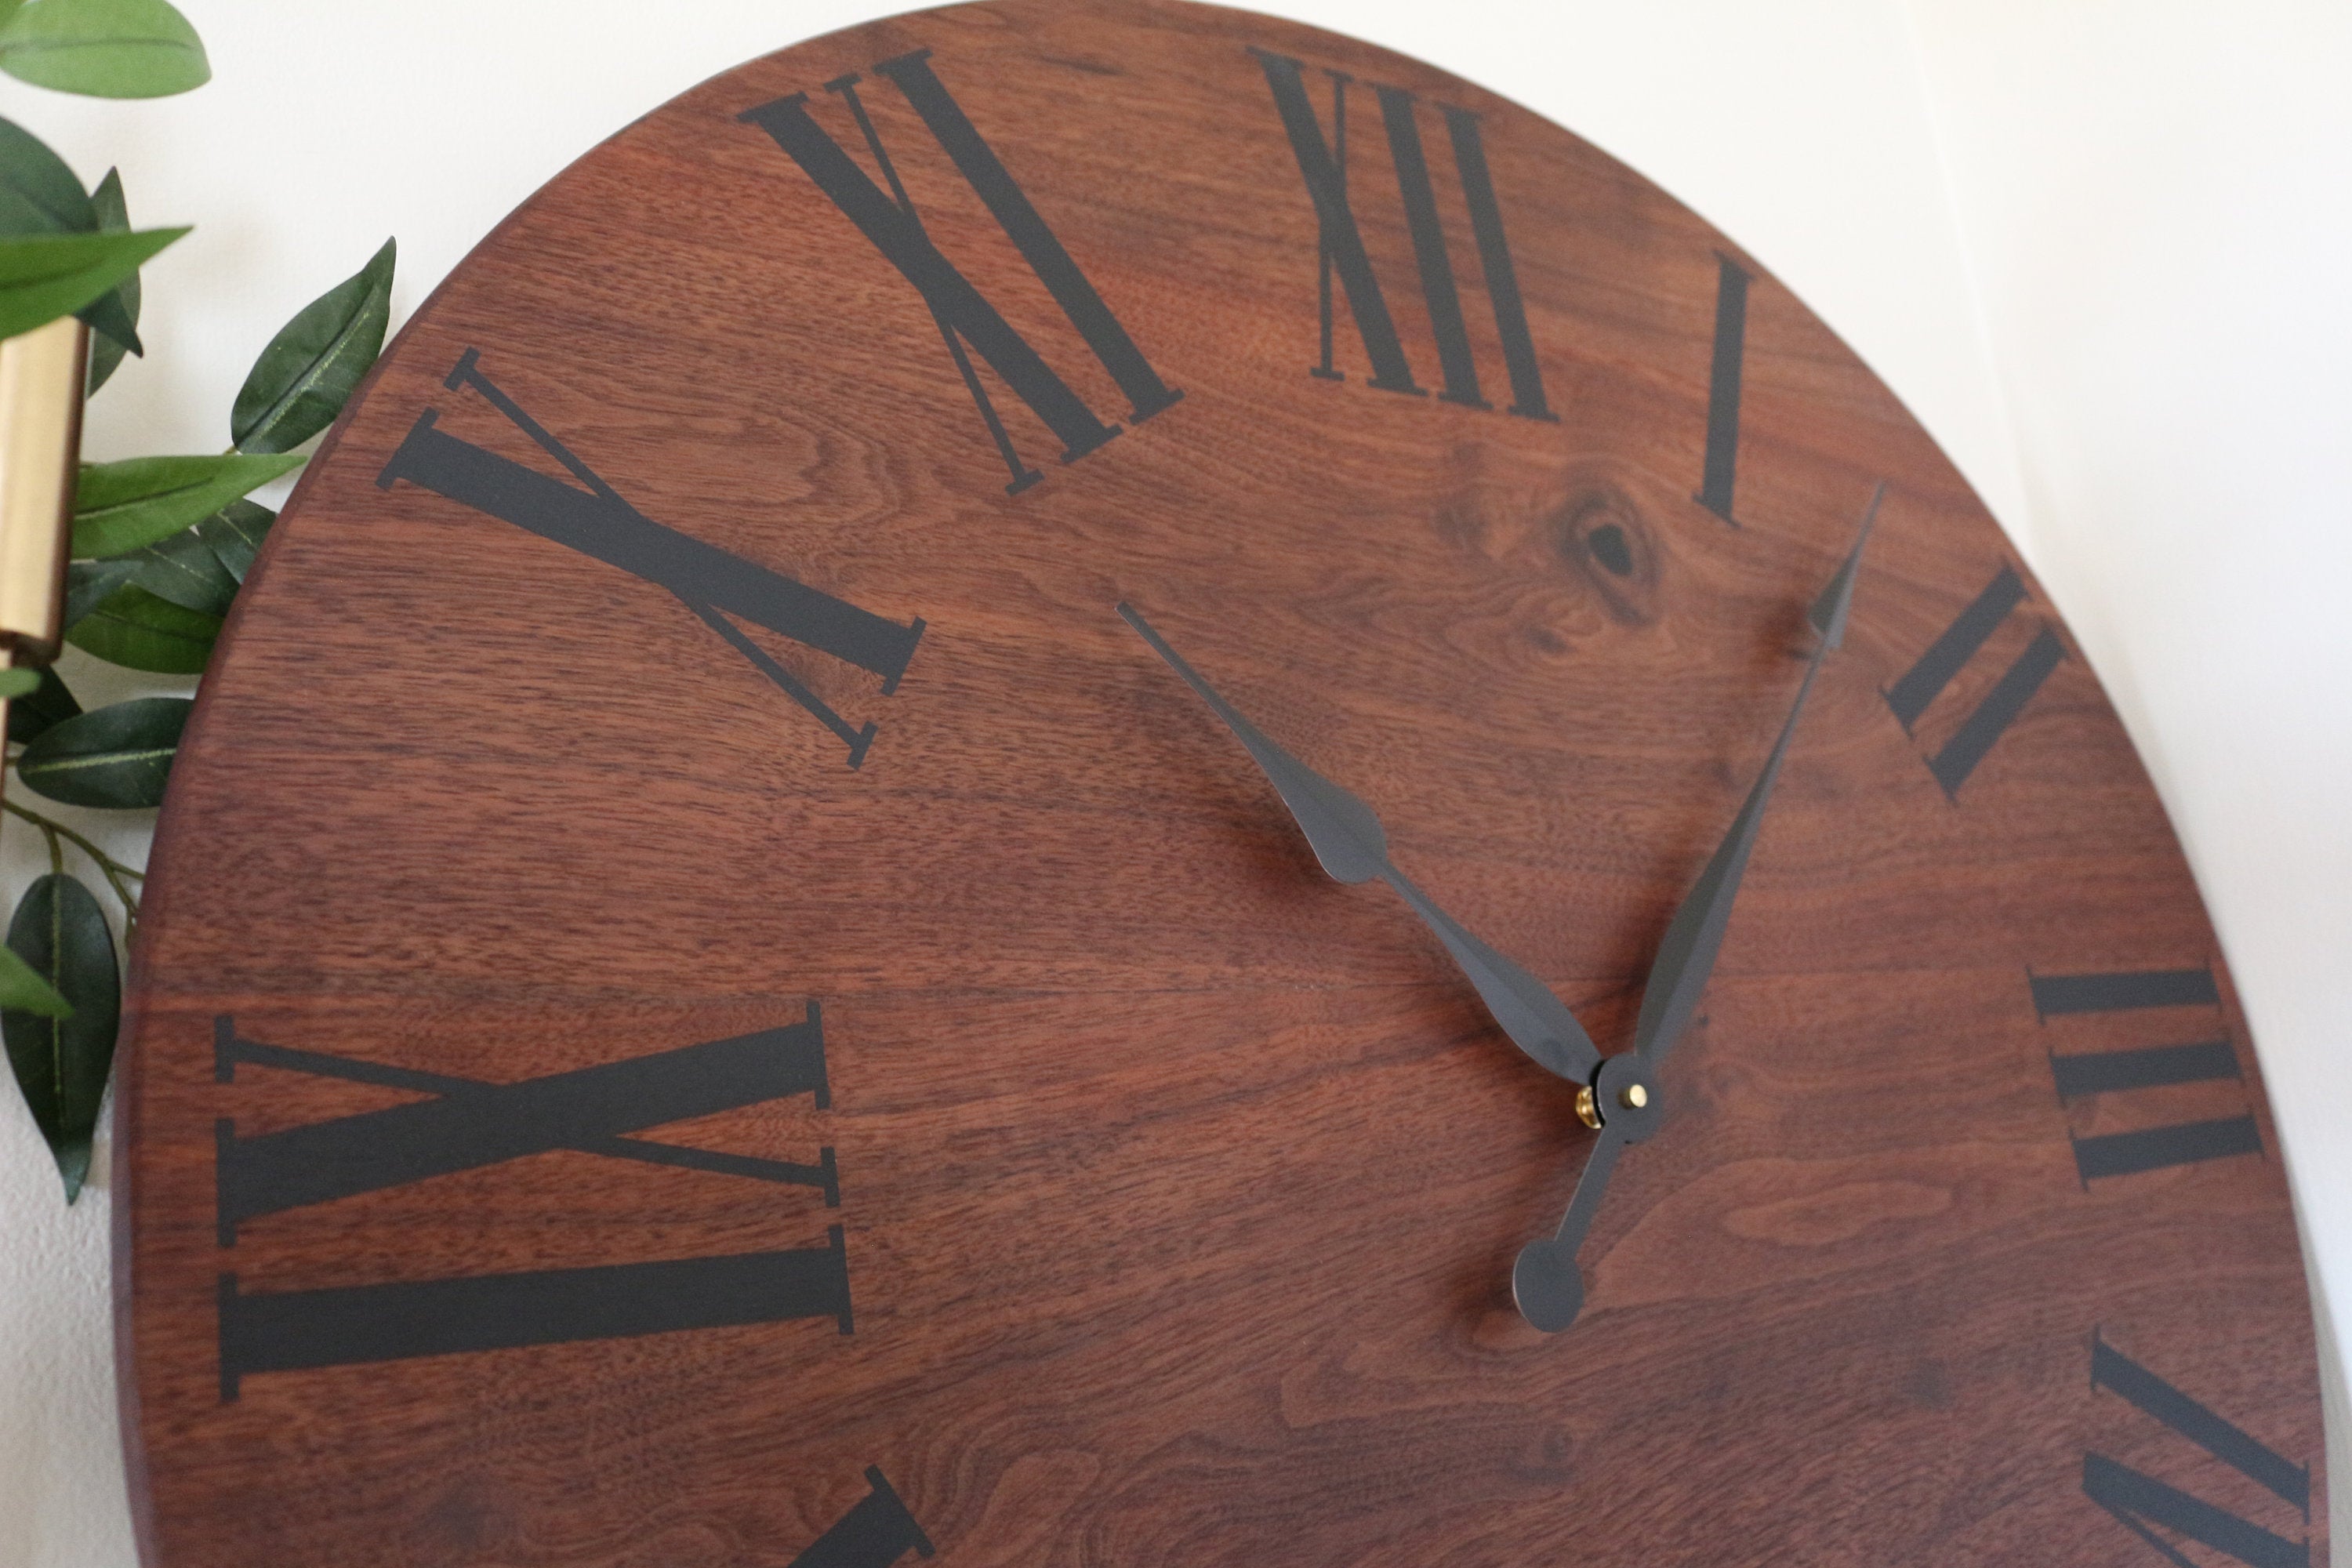 Solid Wood Walnut Wall Clock with Black Roman Numerals